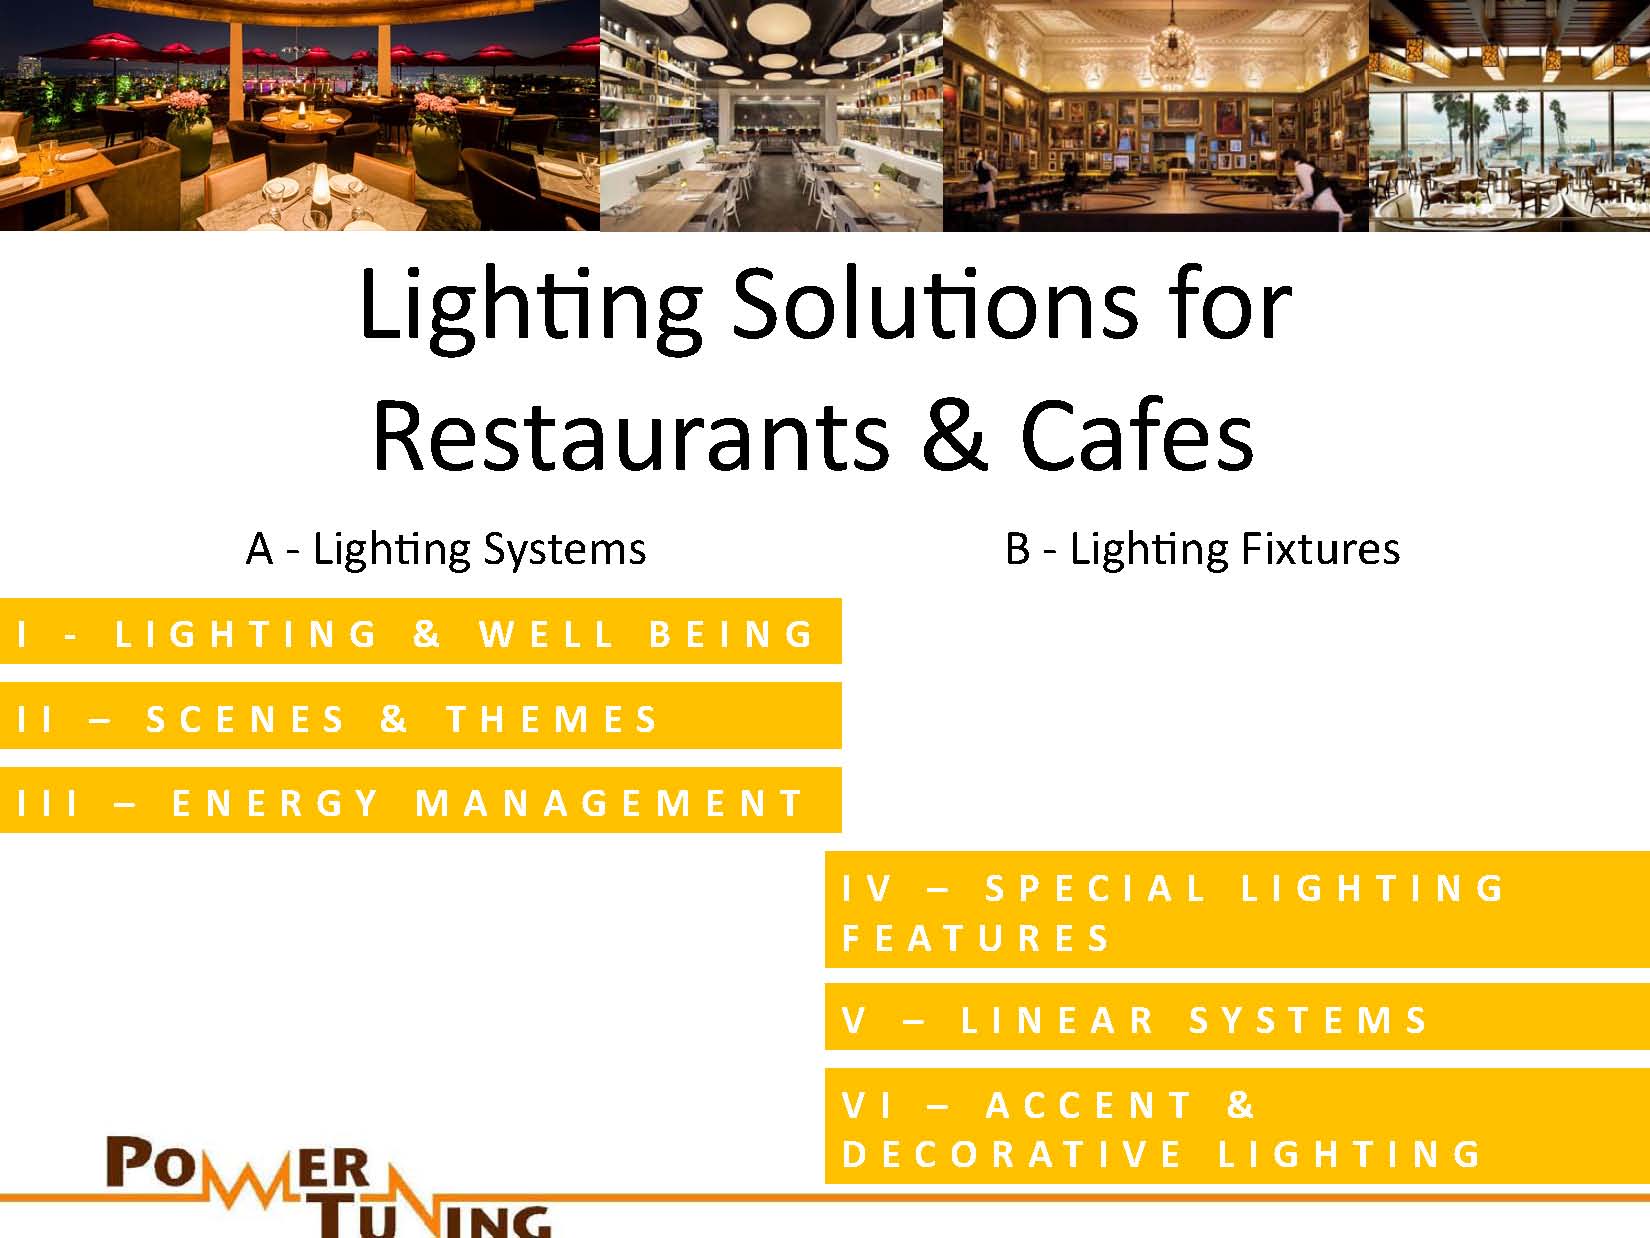 lighting solutions for restaurants, cafes & bars